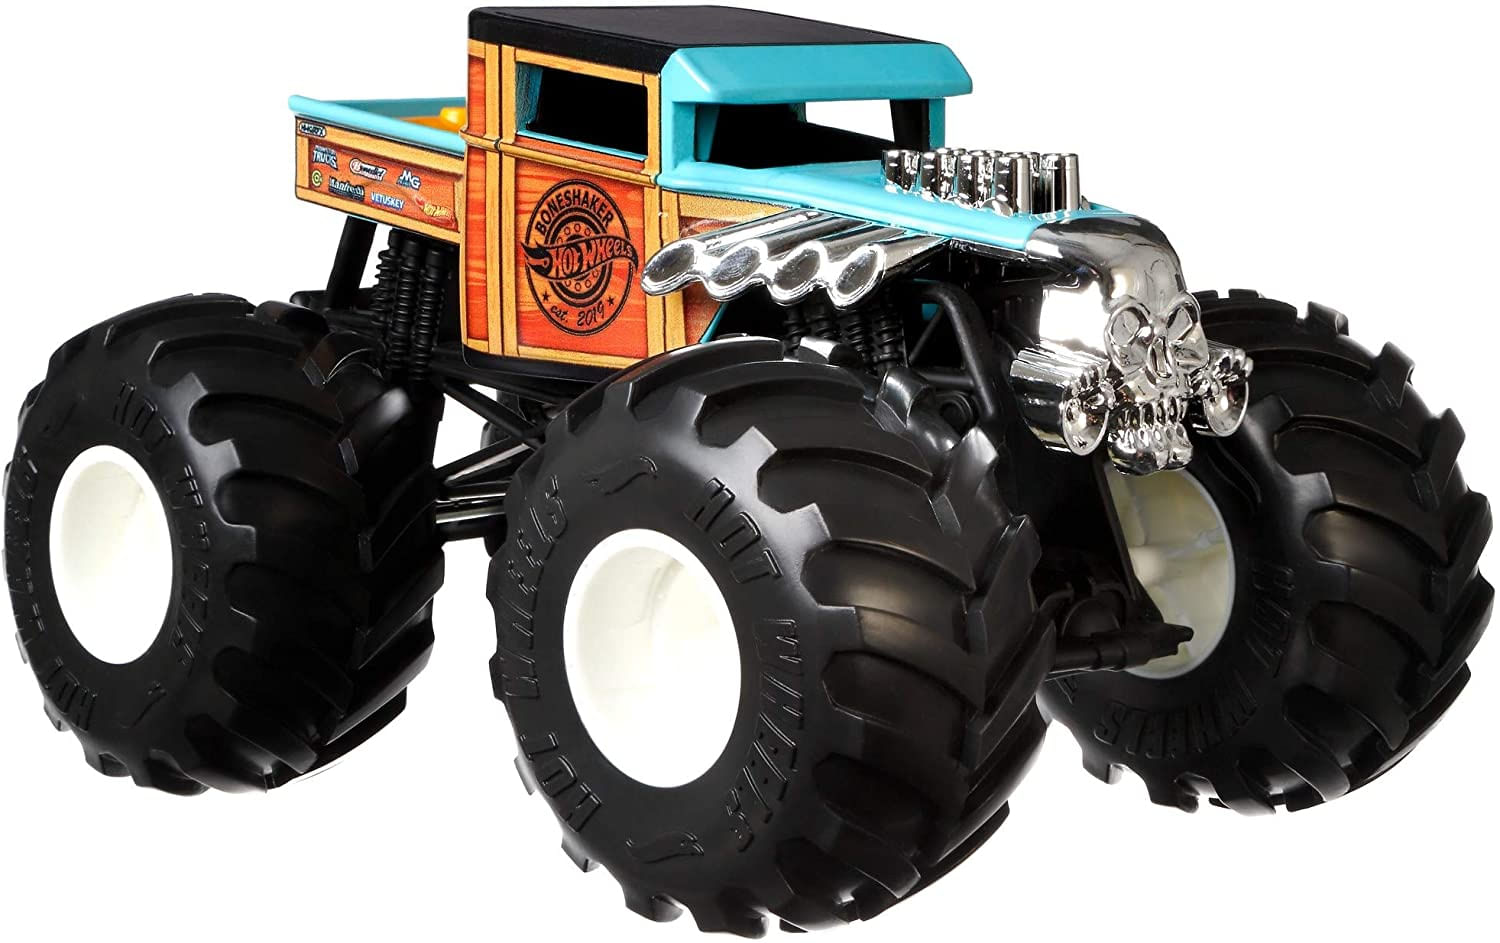 Hot Wheels Monster Trucks 1:24 Veículos Em Escala, Caminhões De Brinquedo  Metálicos Fundidos Colecionáveis Com Rodas Gigantes &, Chassi Estilizado  - Carrefour